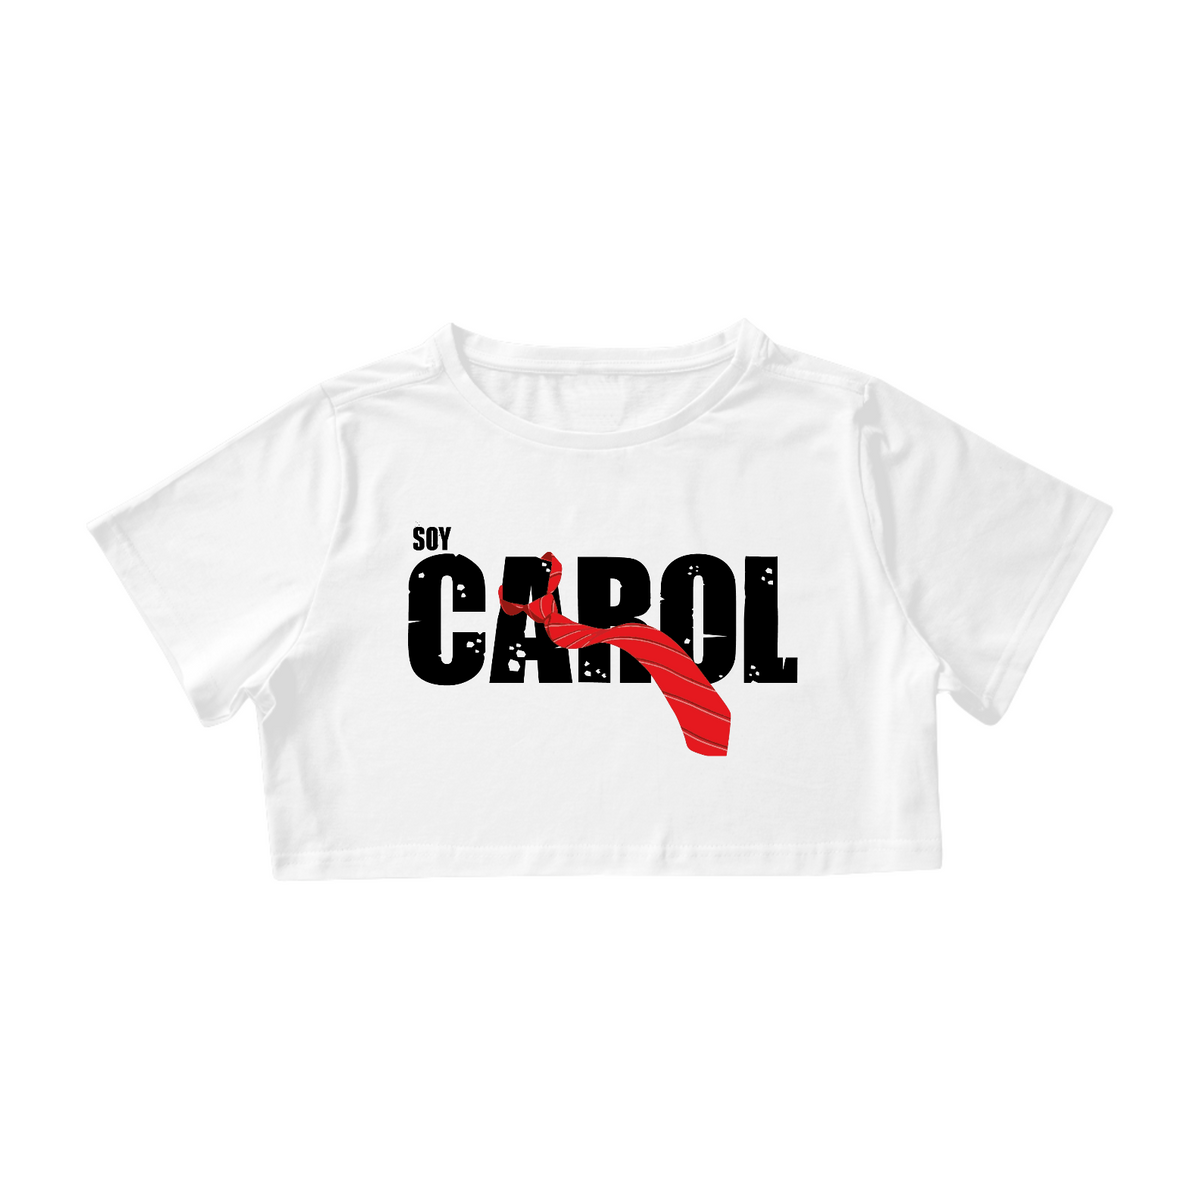 Nome do produto: Cropped - RBD Soy Carol